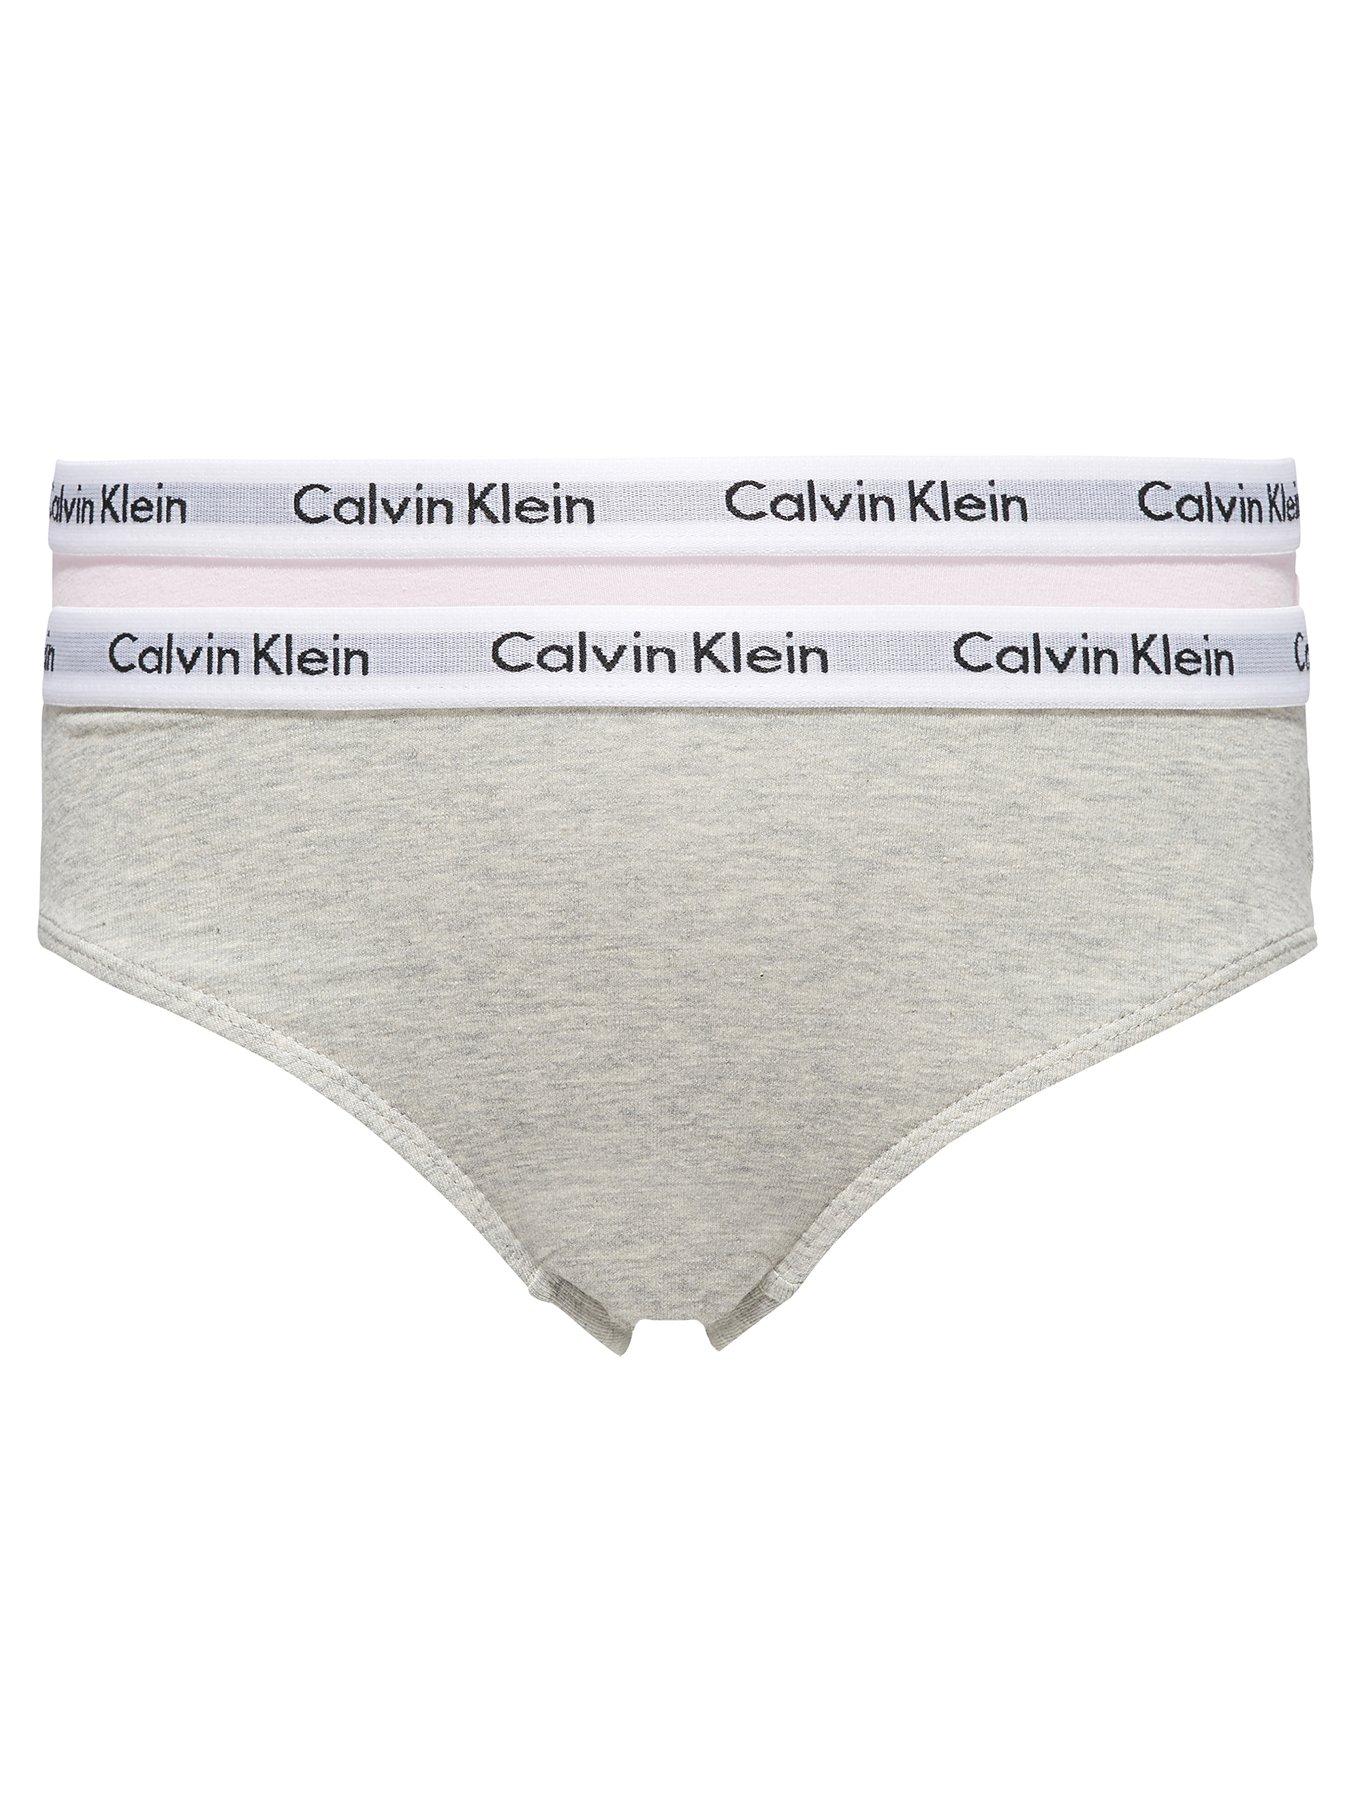 calvin klein ladies underwear uk